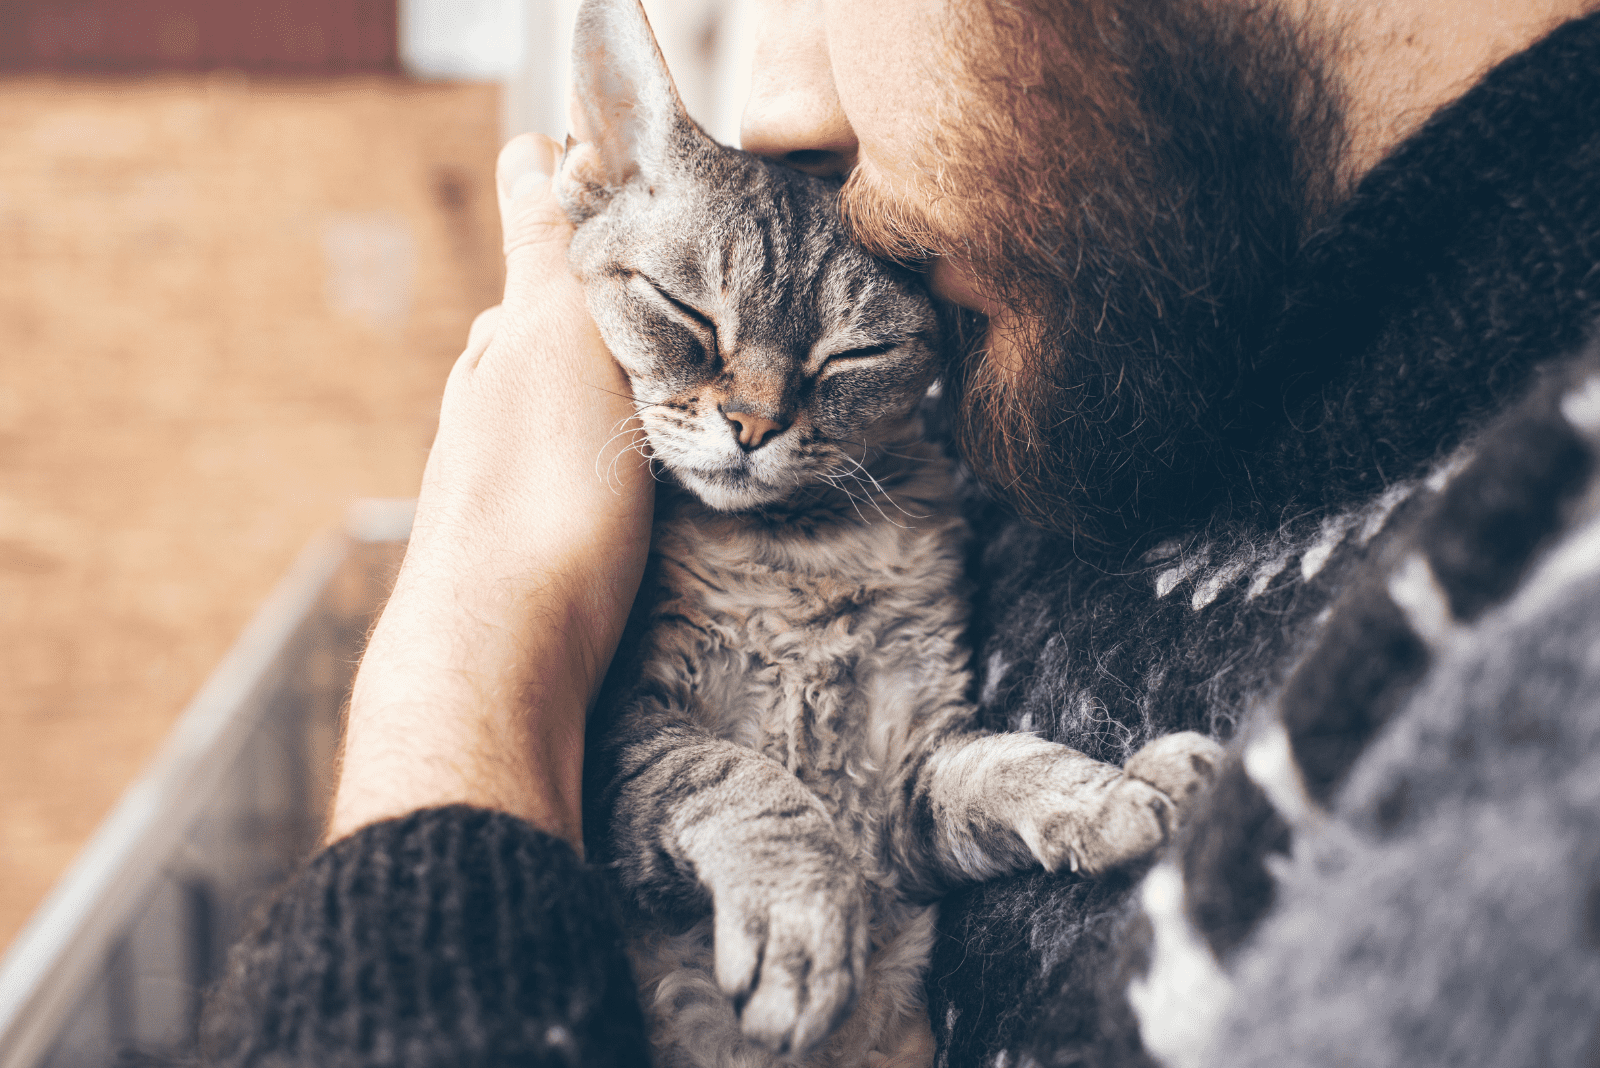 a man hugs a cat